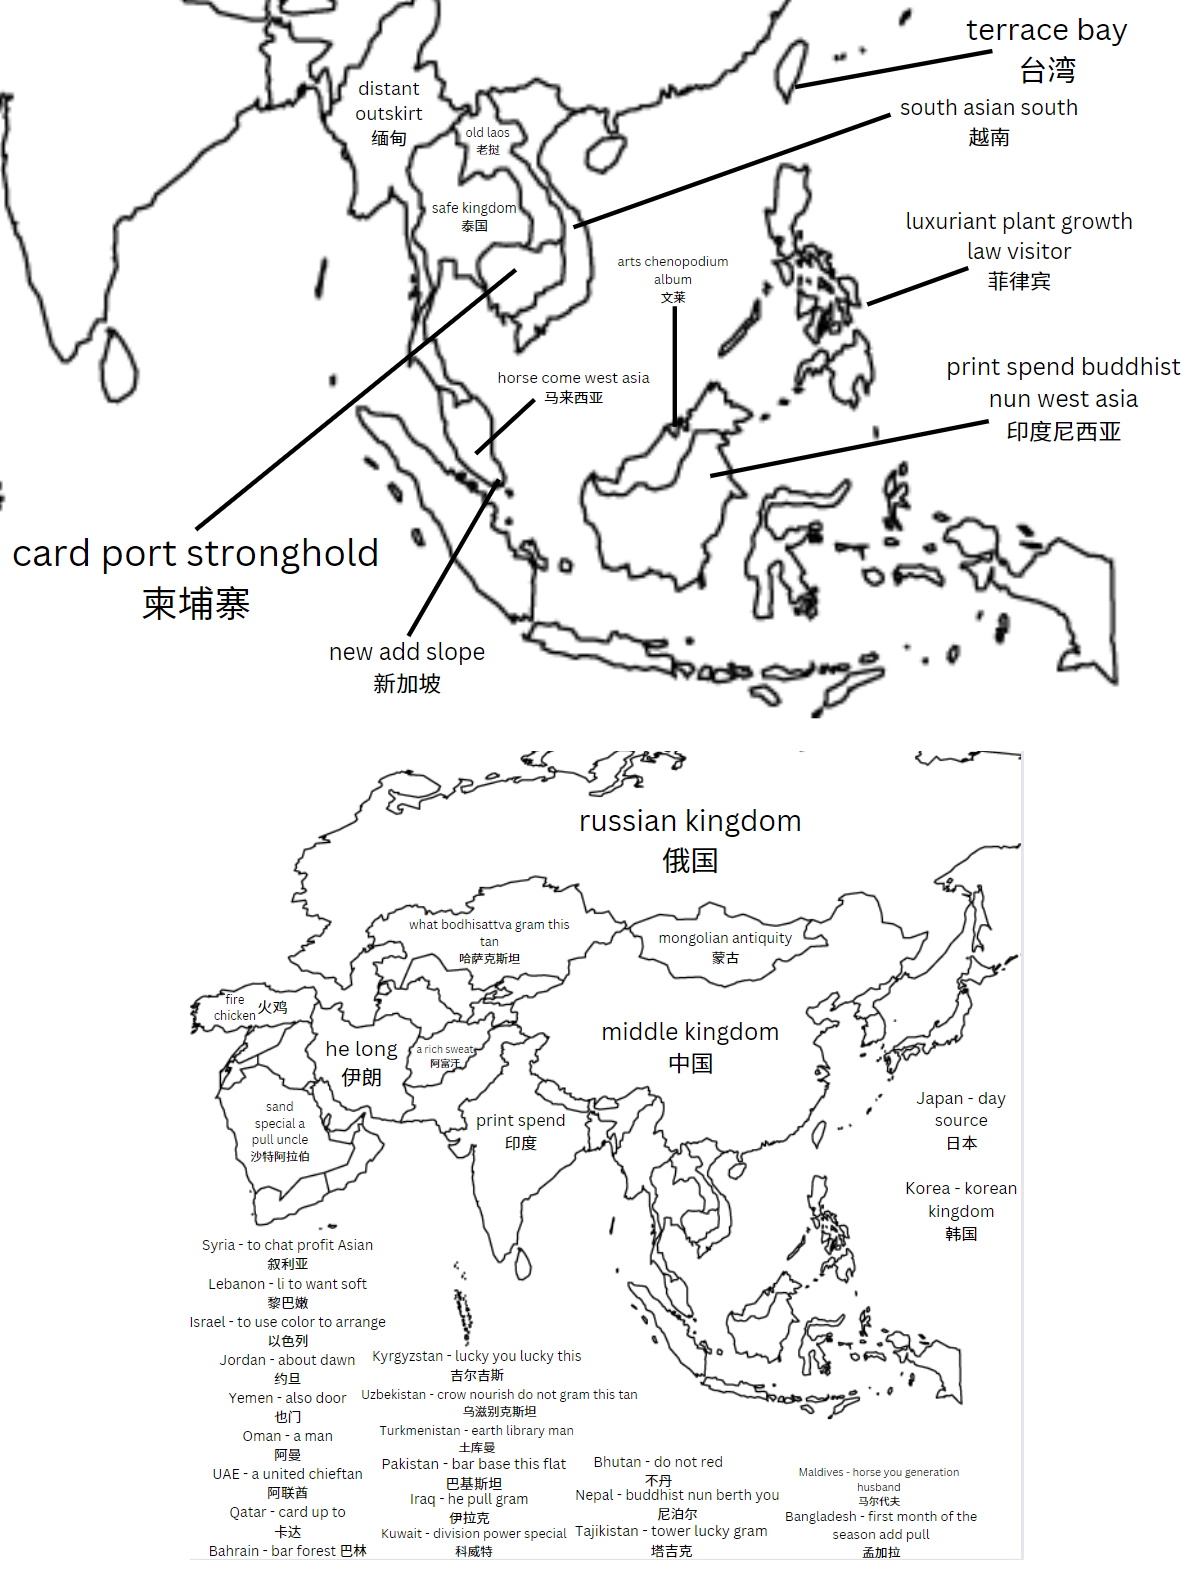 Dosłowne tłumaczenie chińskich nazw poszczególnych azjatyckich państw